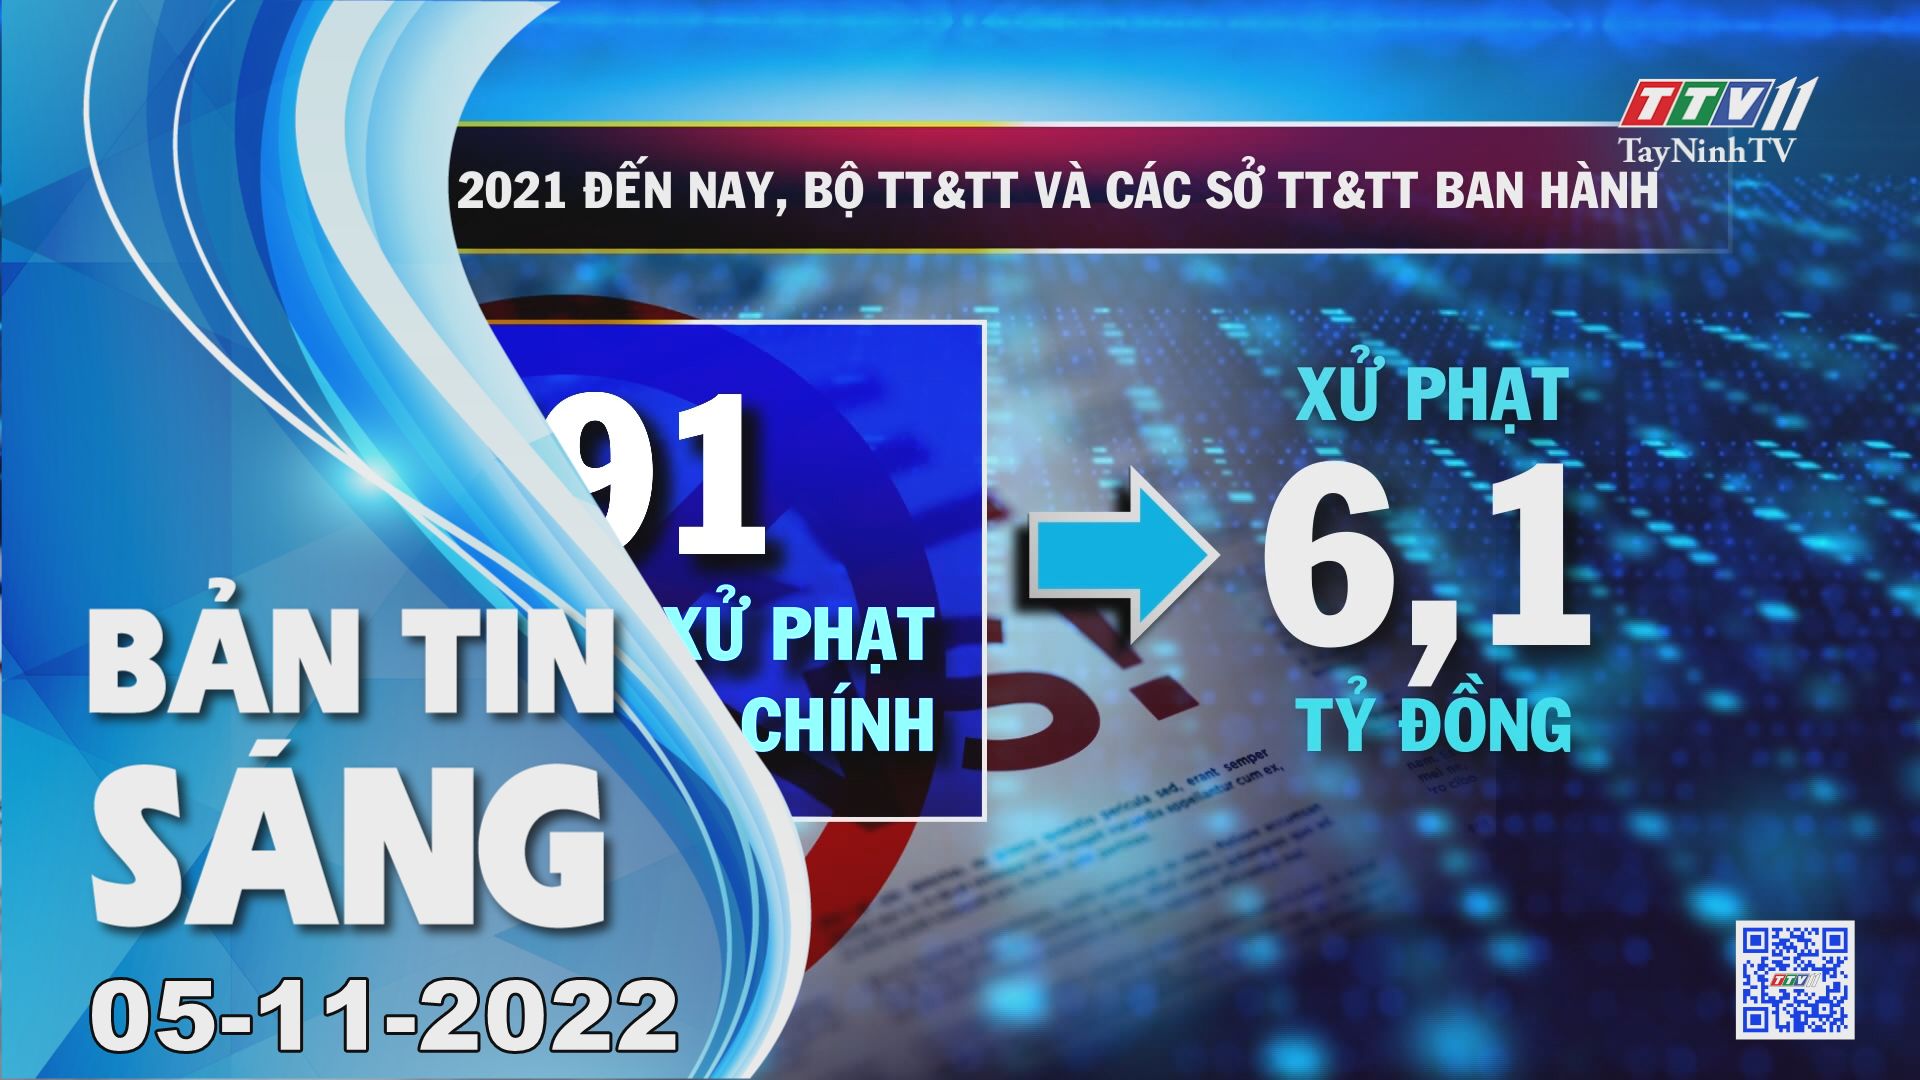 Bản tin sáng 05-11-2022 | Tin tức hôm nay | TayNinhTV